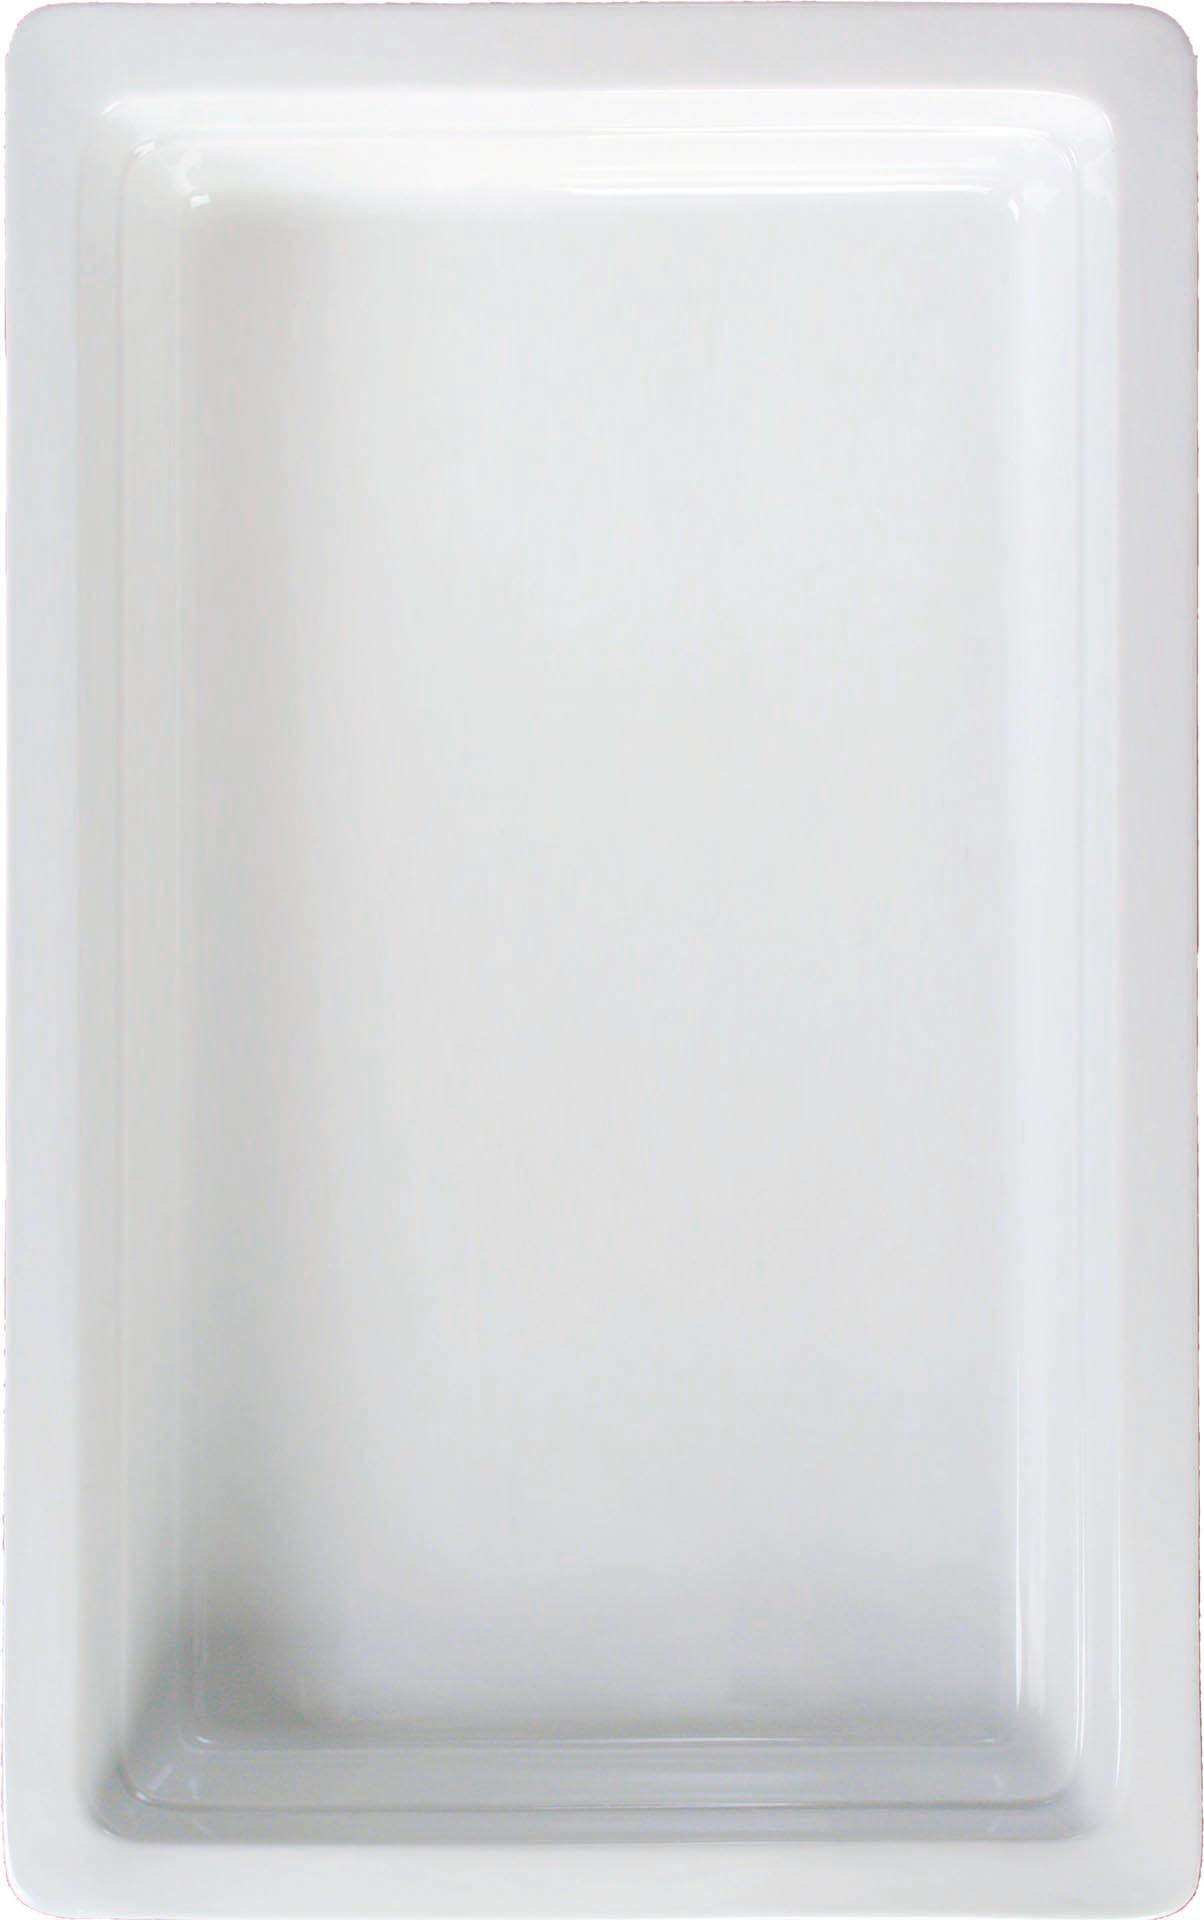 GN-Behälter Porzellan weiss GN 1/2-65 Inhalt: 3,0 Liter